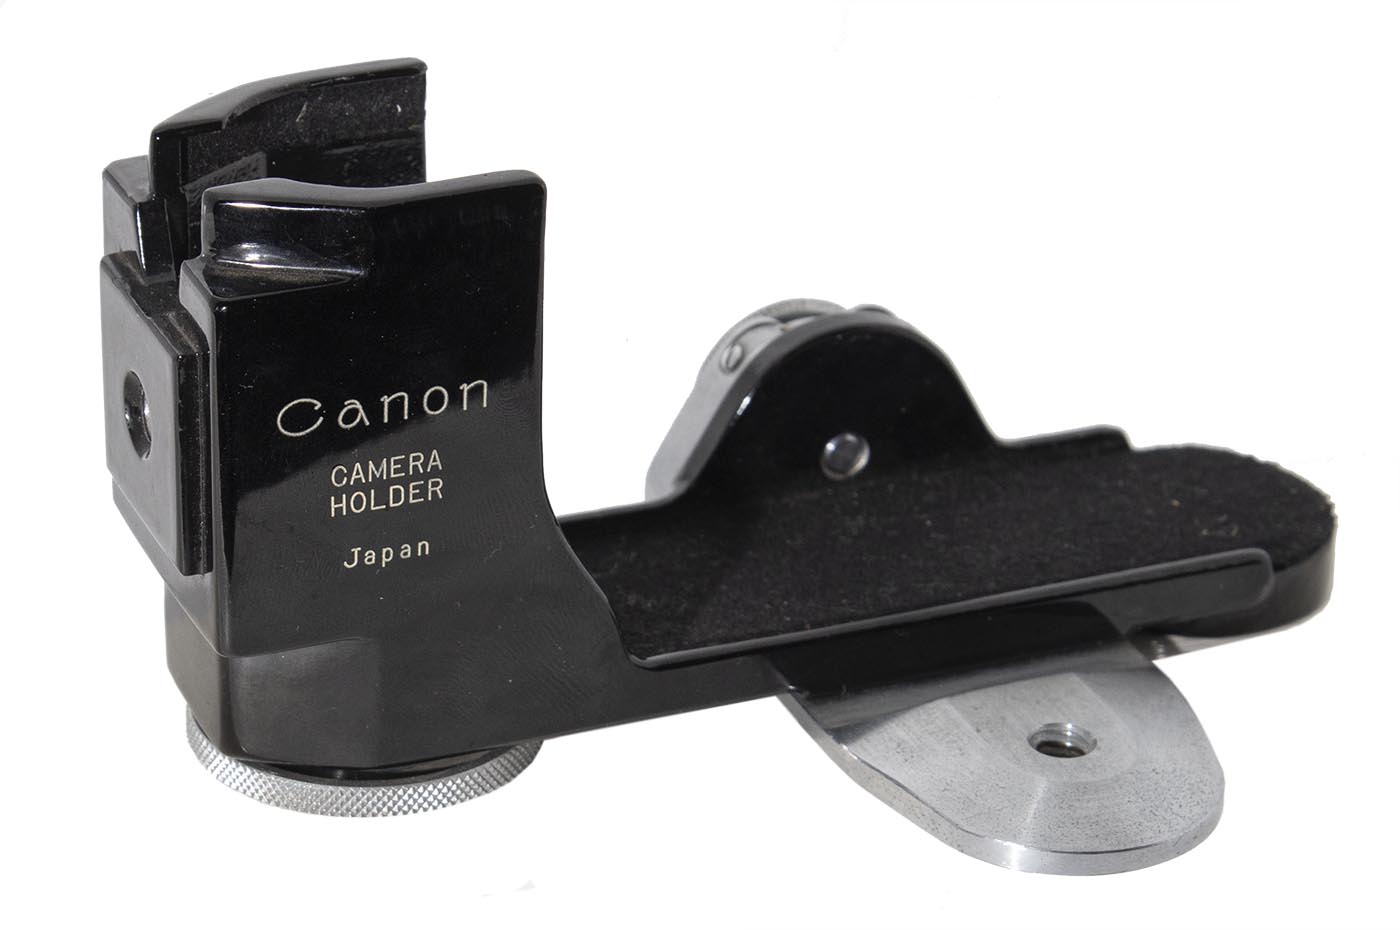 Canon Camera Holder